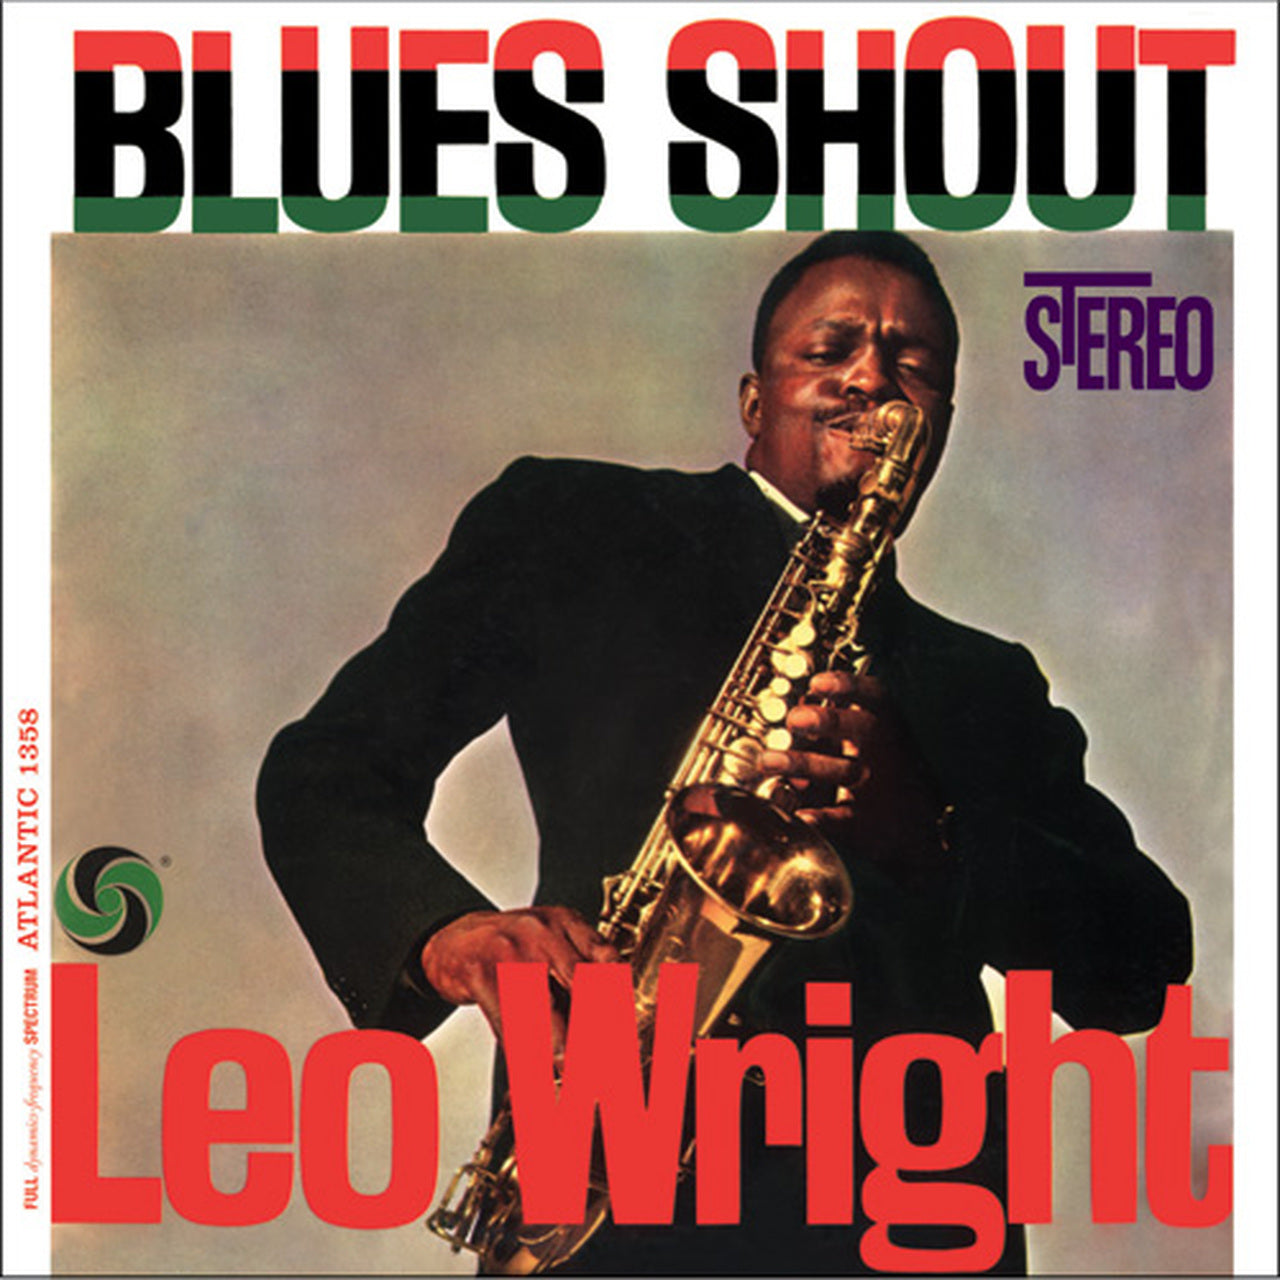 Leo Wright - Blues Shout - Puro placer LP